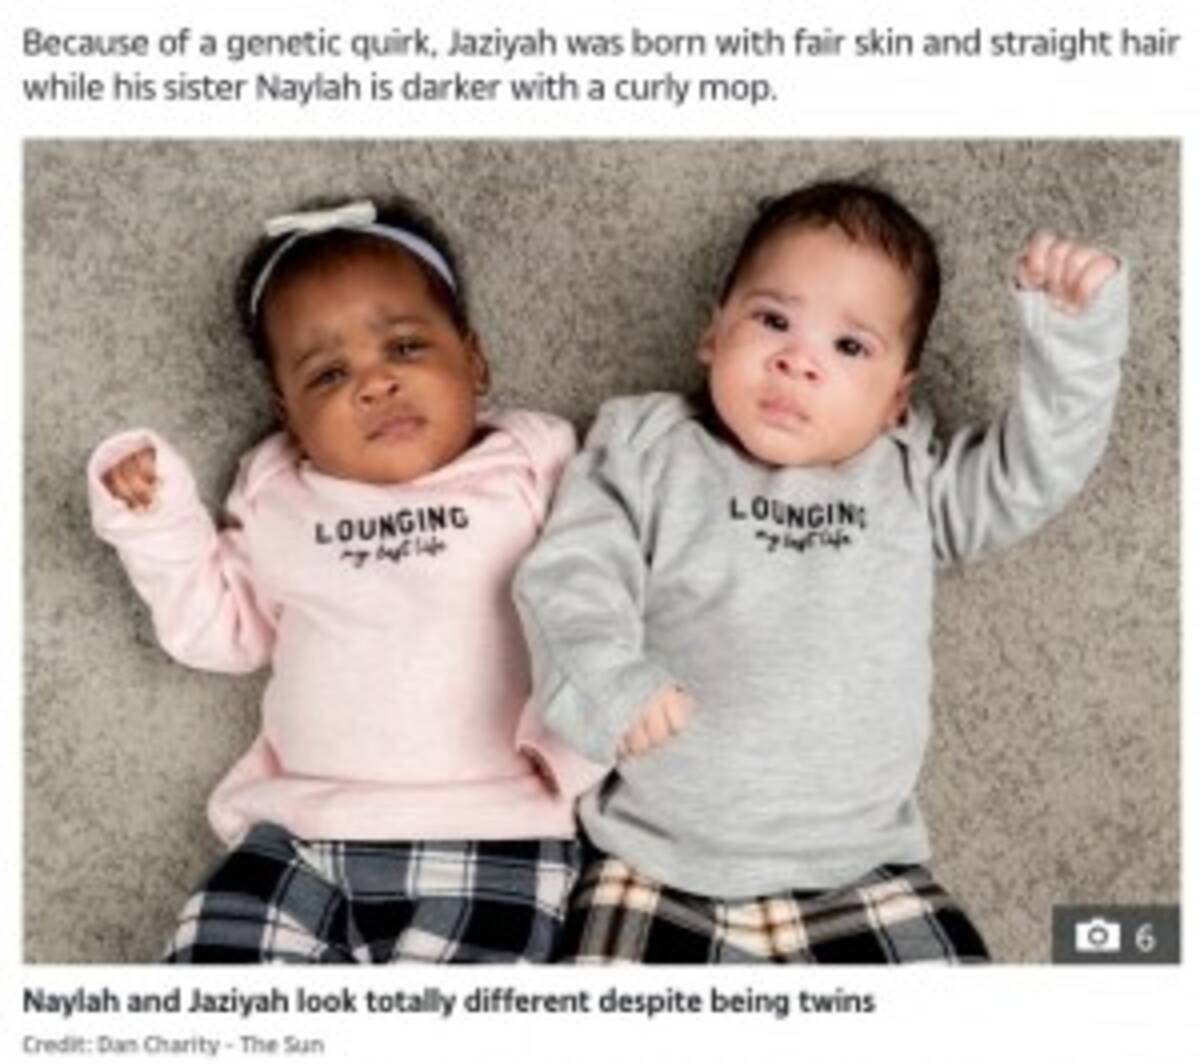 肌の色も髪質も全く異なる4か月の双子姉妹 でも目の色と顔はそっくり 英 21年2月2日 エキサイトニュース